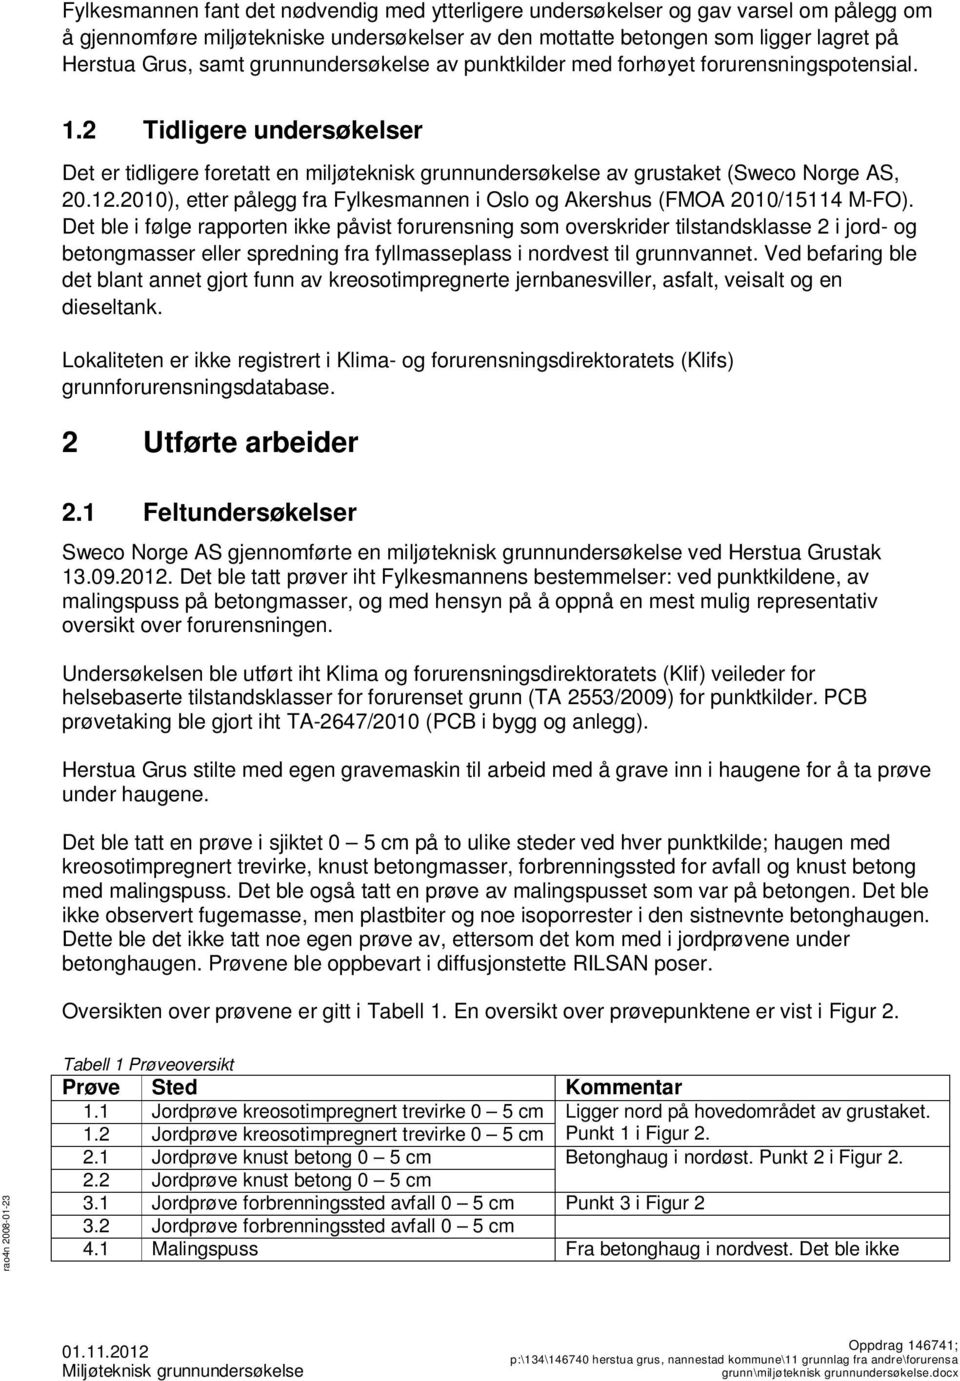 2010), etter pålegg fra Fylkesmannen i Oslo og Akershus (FMOA 2010/15114 M-FO).